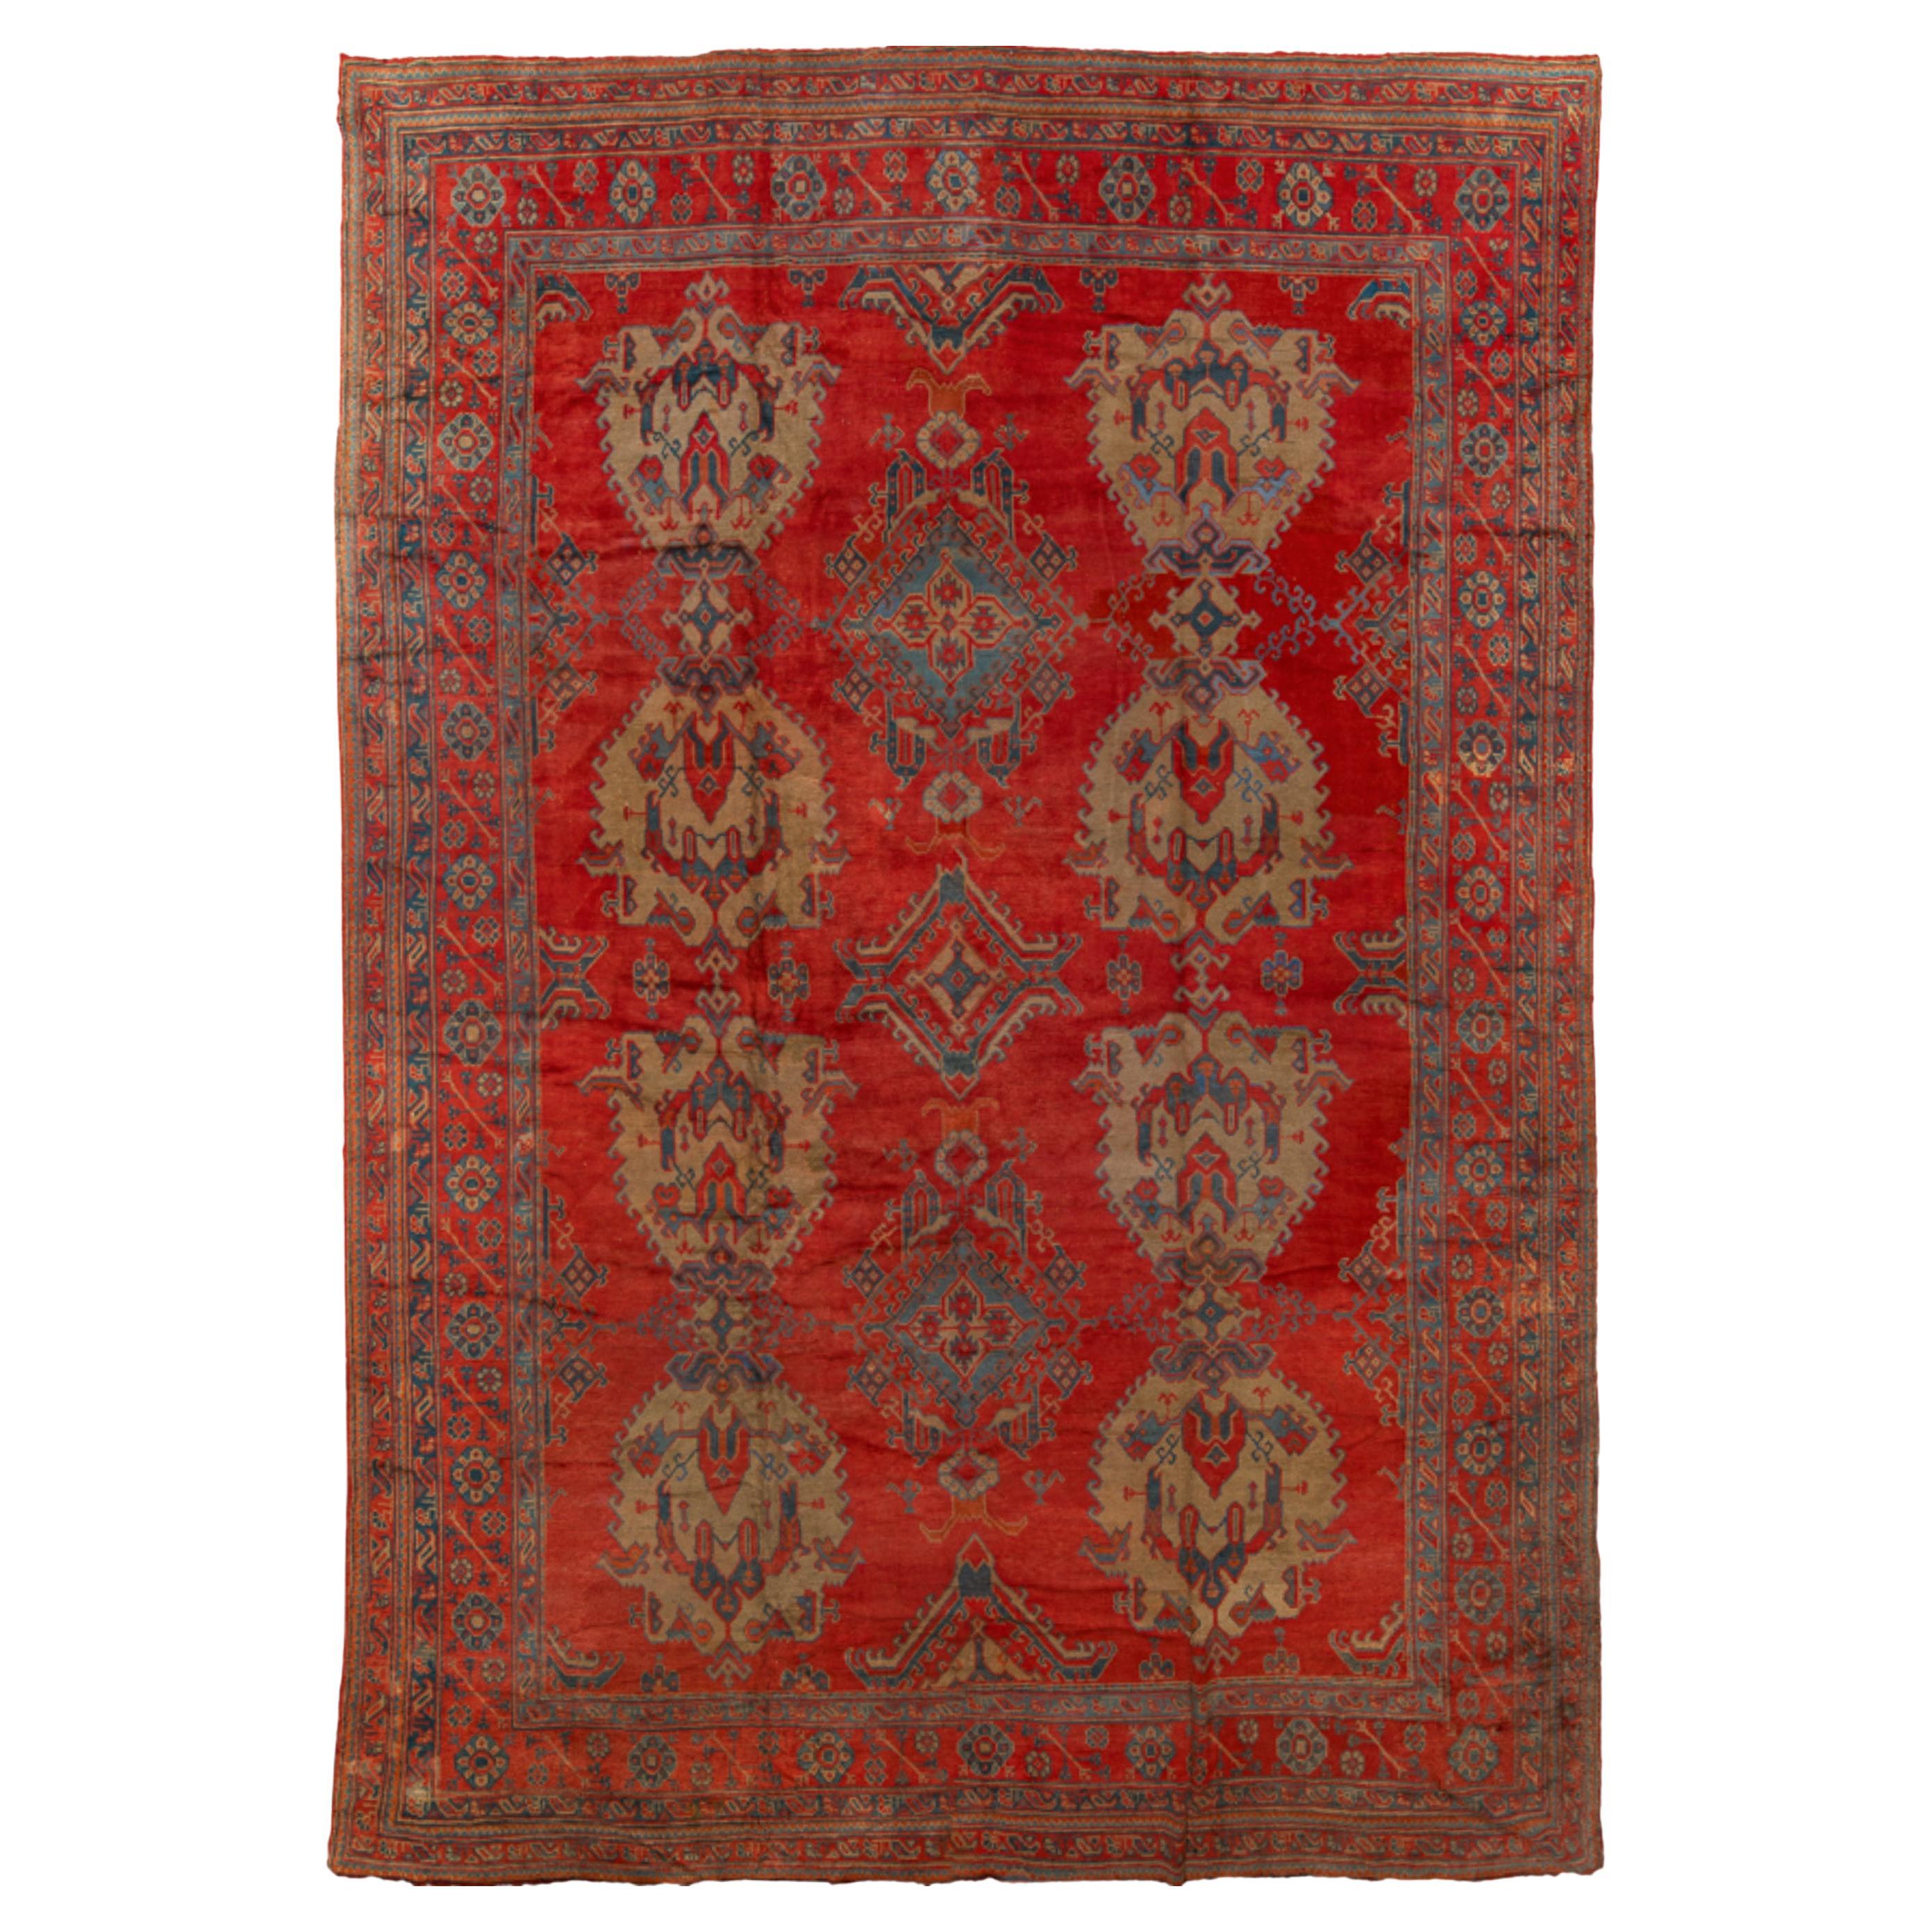 Ancien tapis turc Oushak en laine rouge tissé à la main, de luxe  Taille : 14'4 x 20'